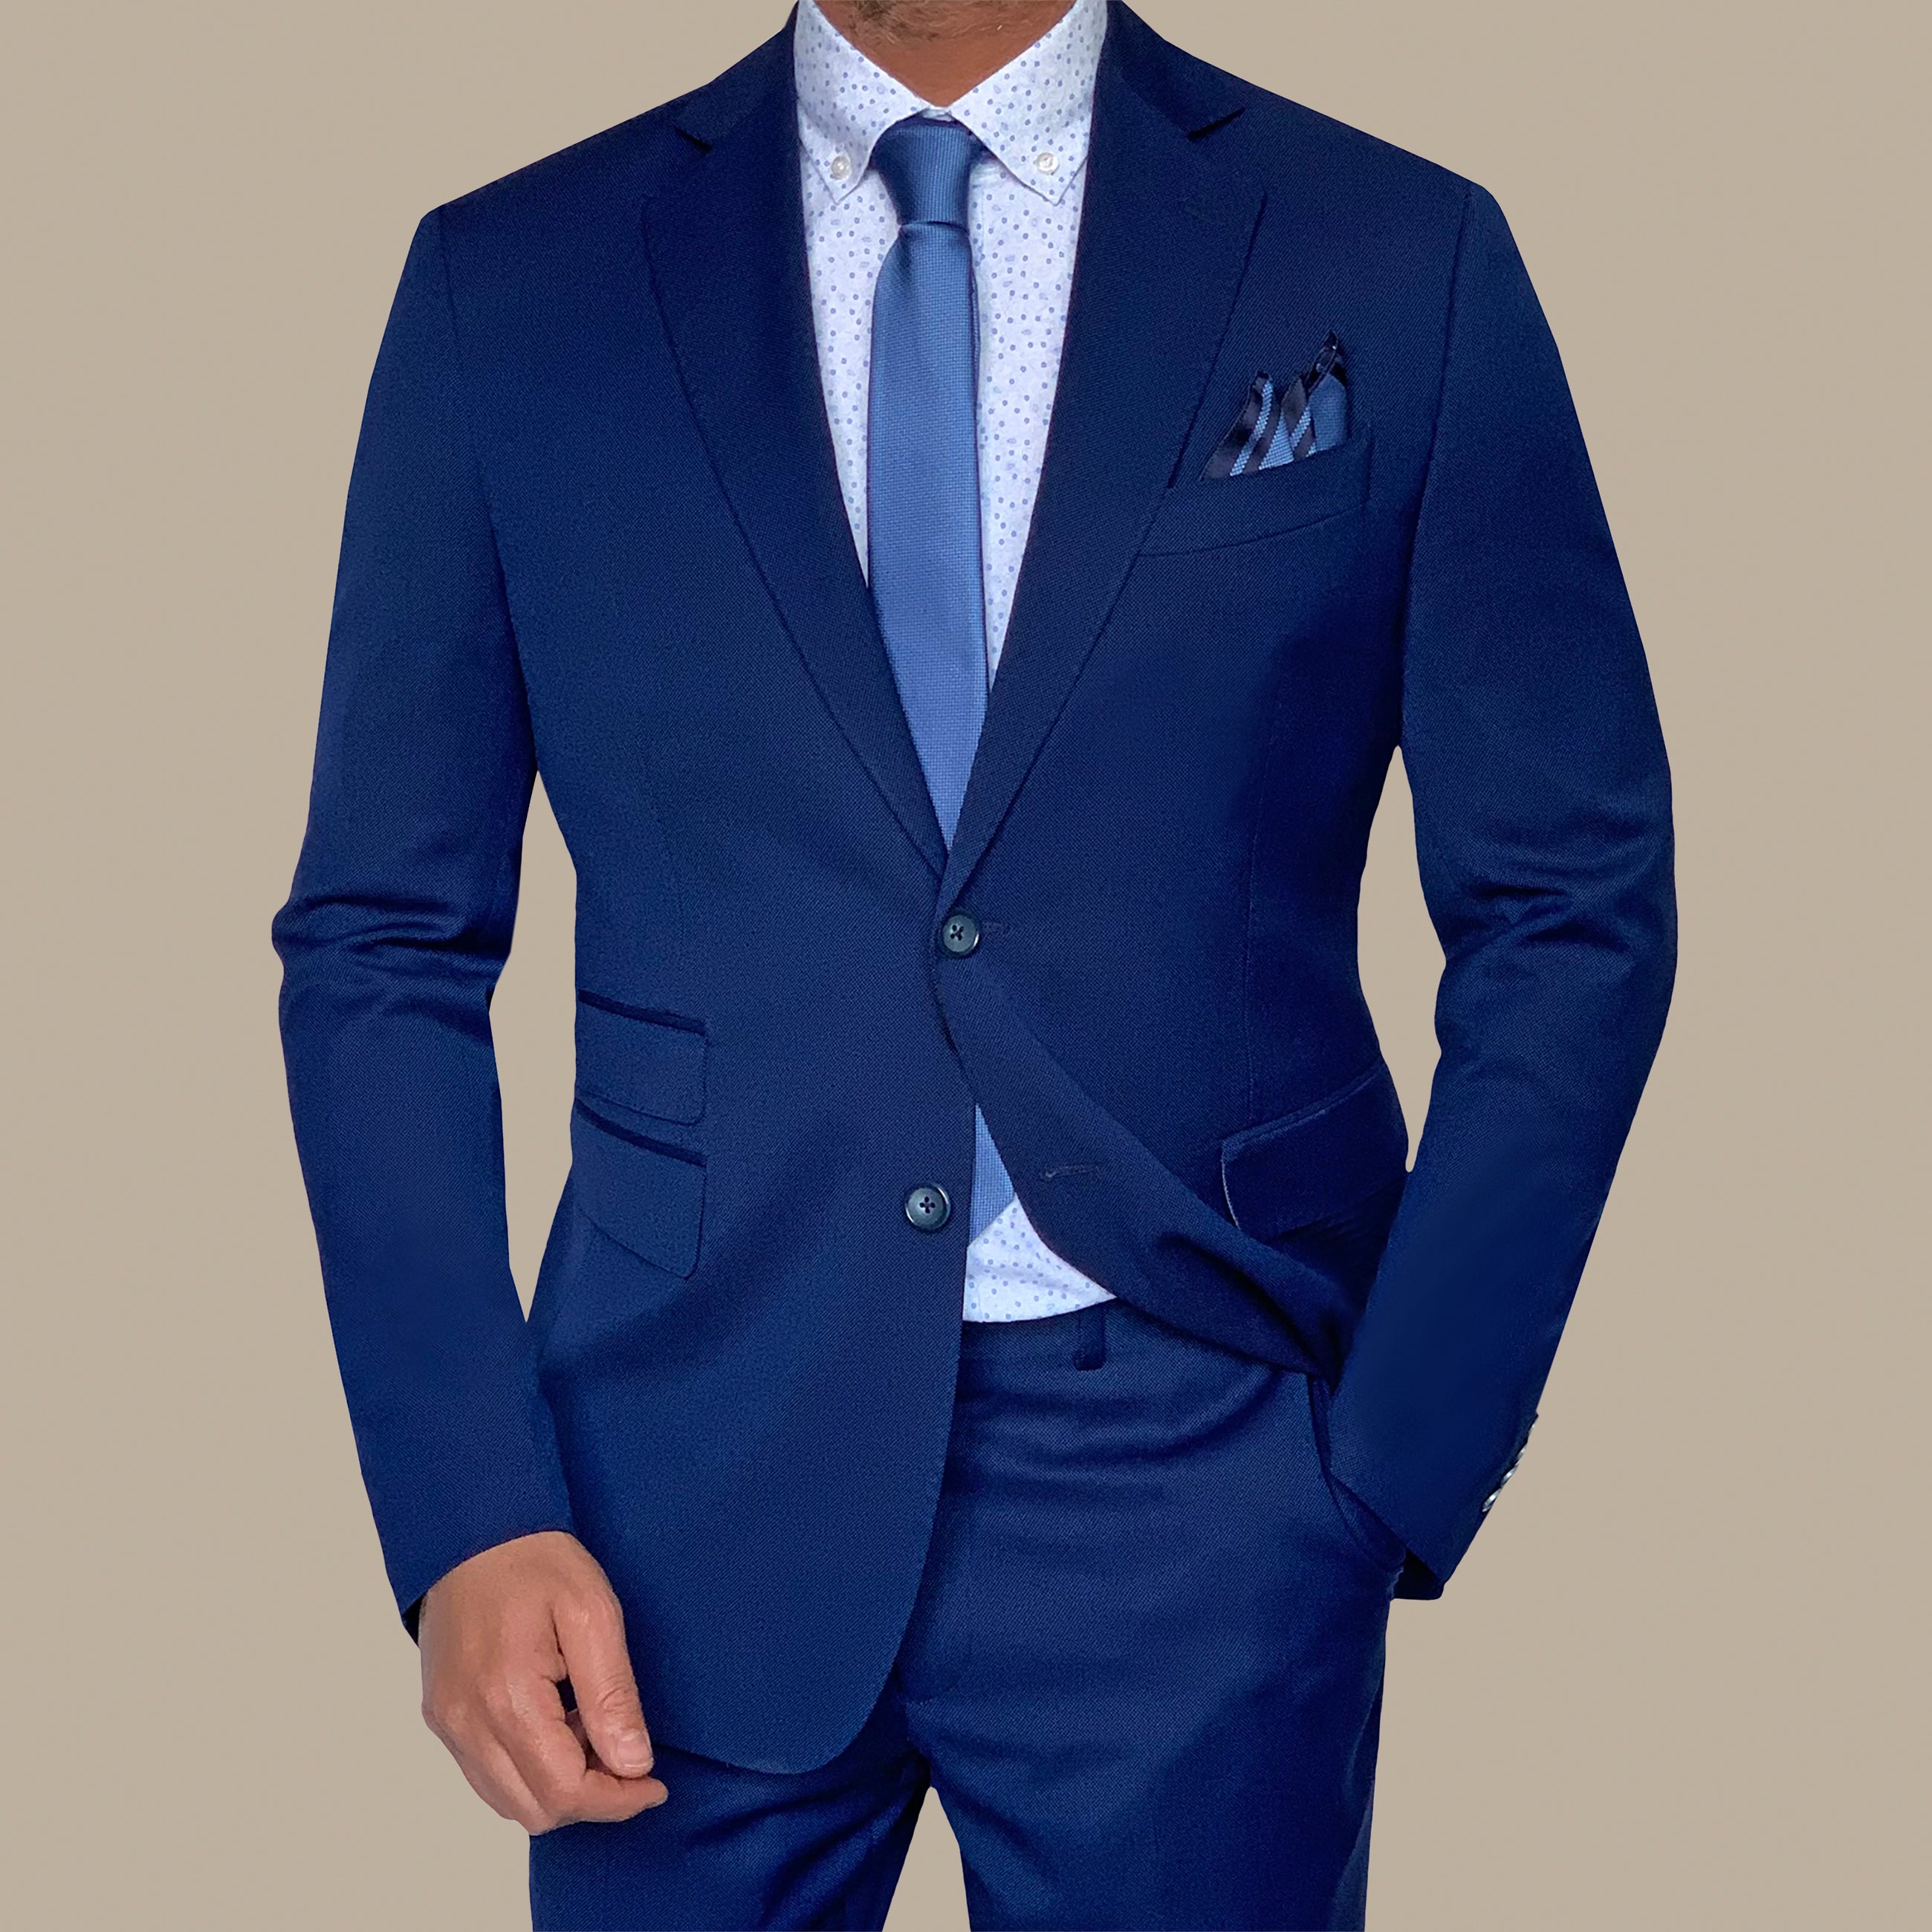 Regular Structured Suit